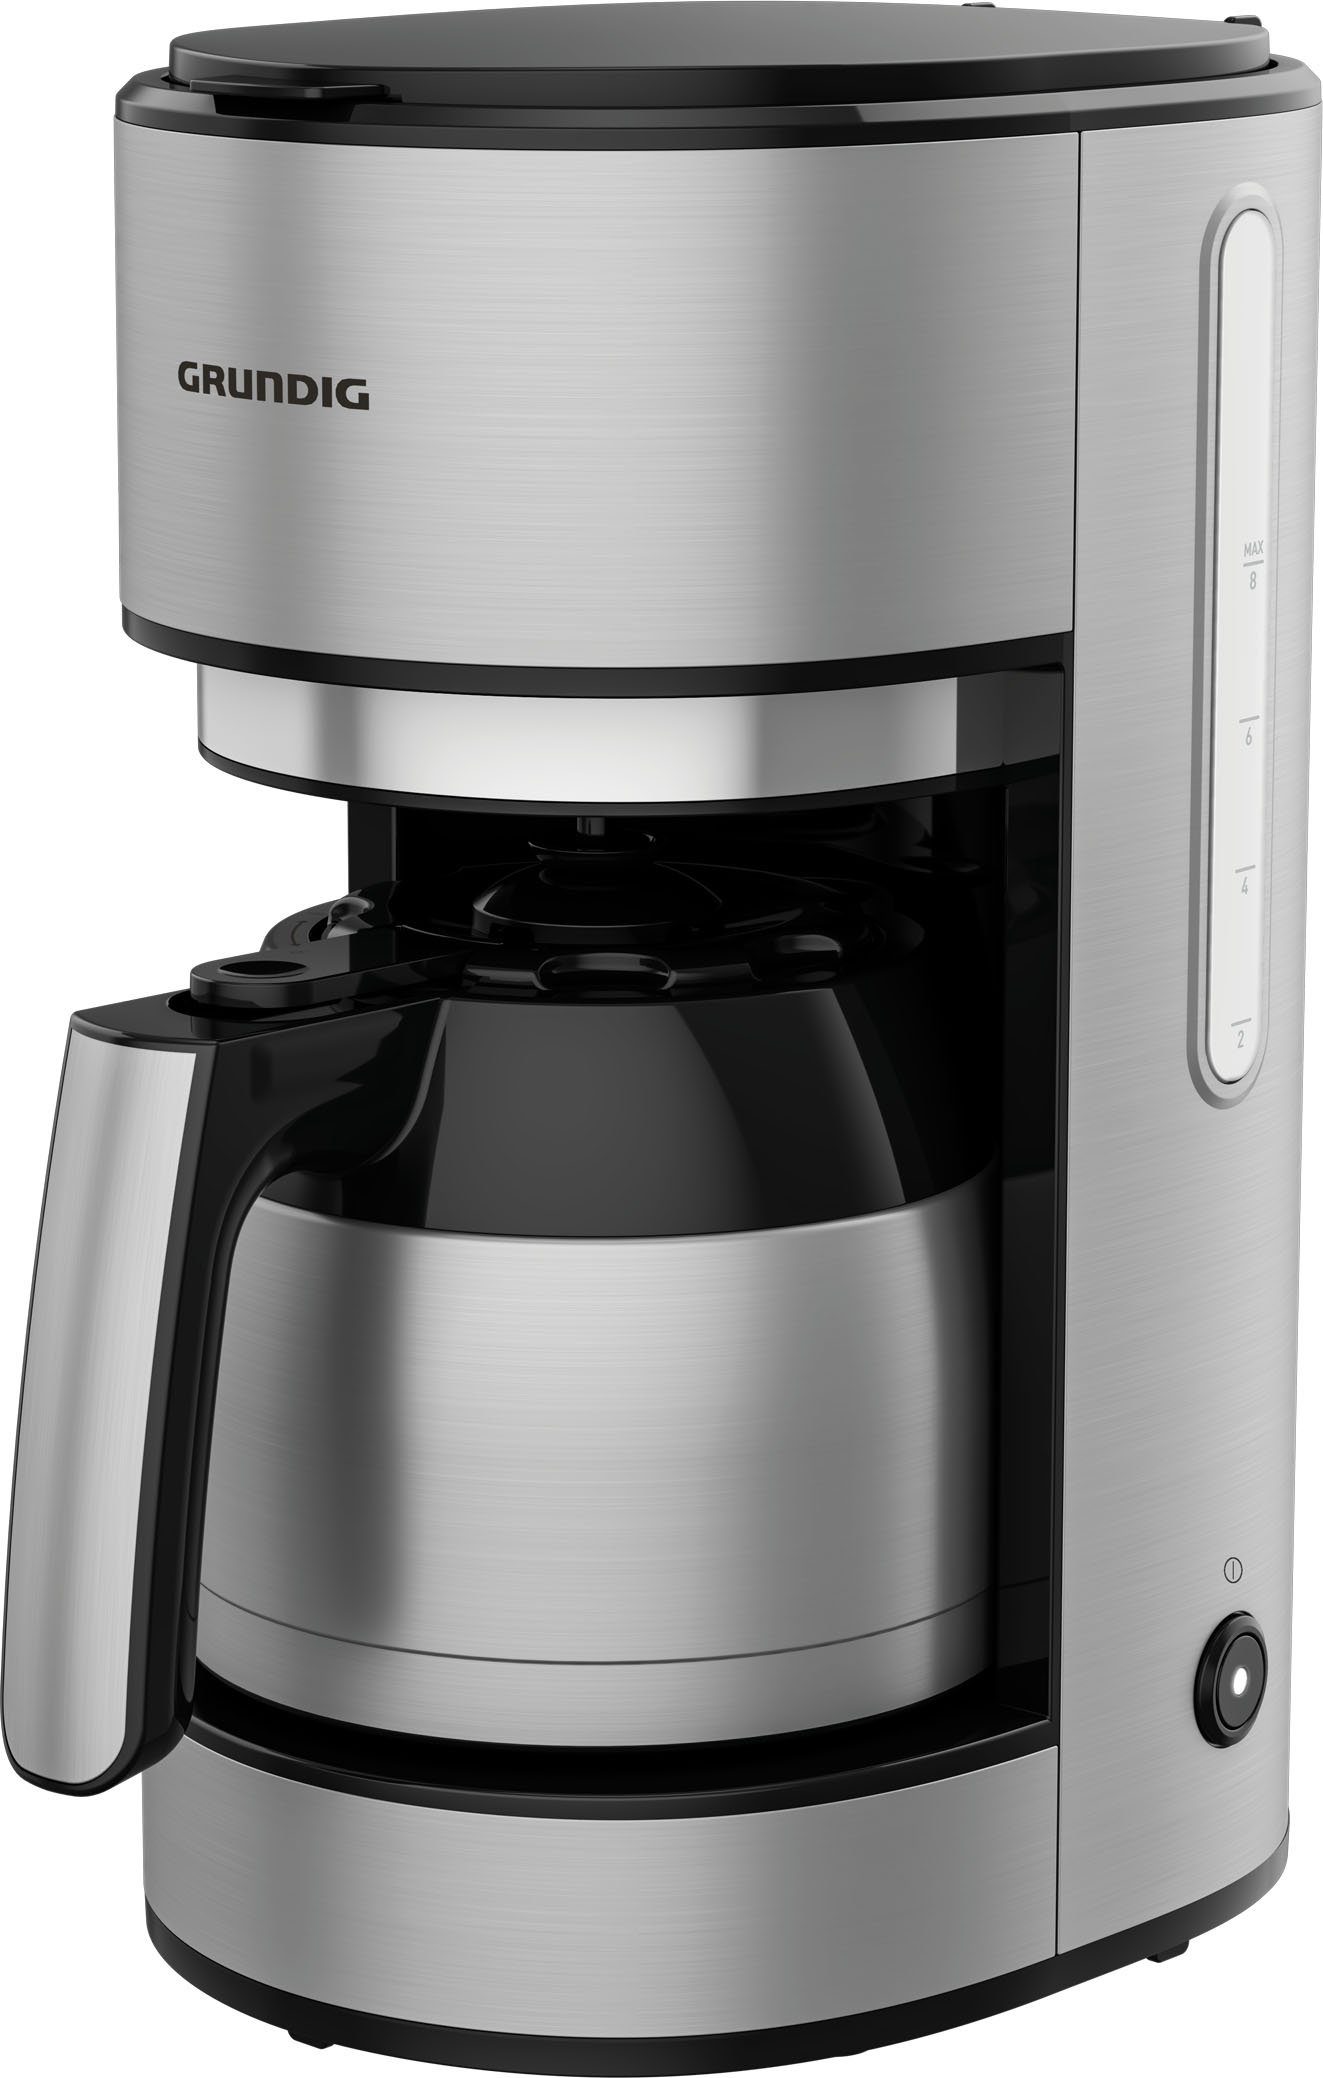 Grundig Filterkaffeemaschine KM 5620 T, Abschaltautomatik Kaffeekanne, W, 1000 1l Kraftvolle